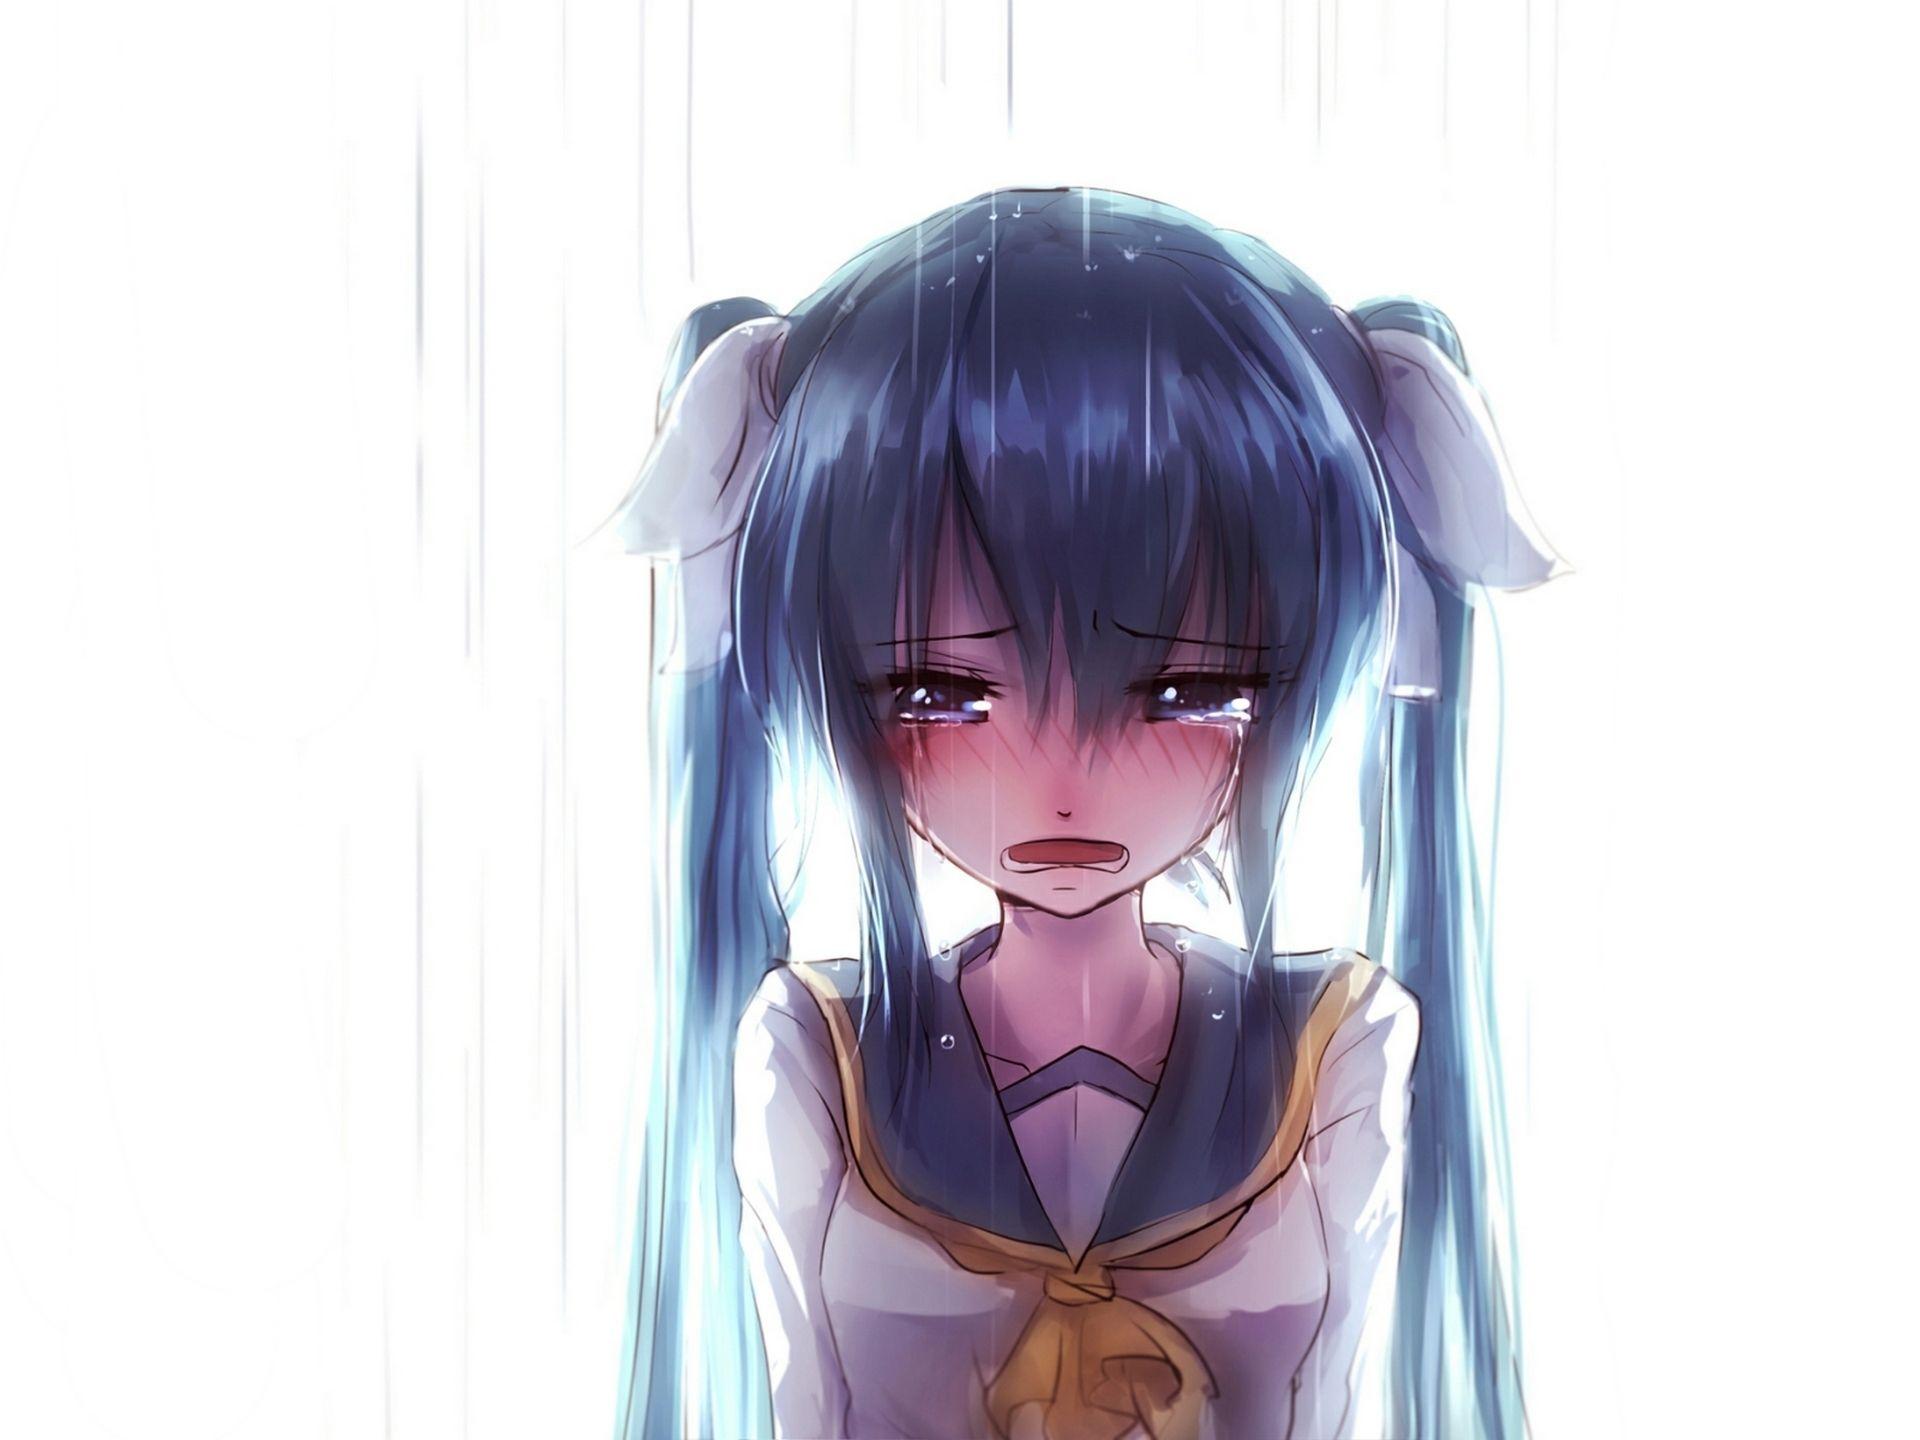 Sad anime face Manga style big blue eyes little  Stock Illustration  65574640  PIXTA